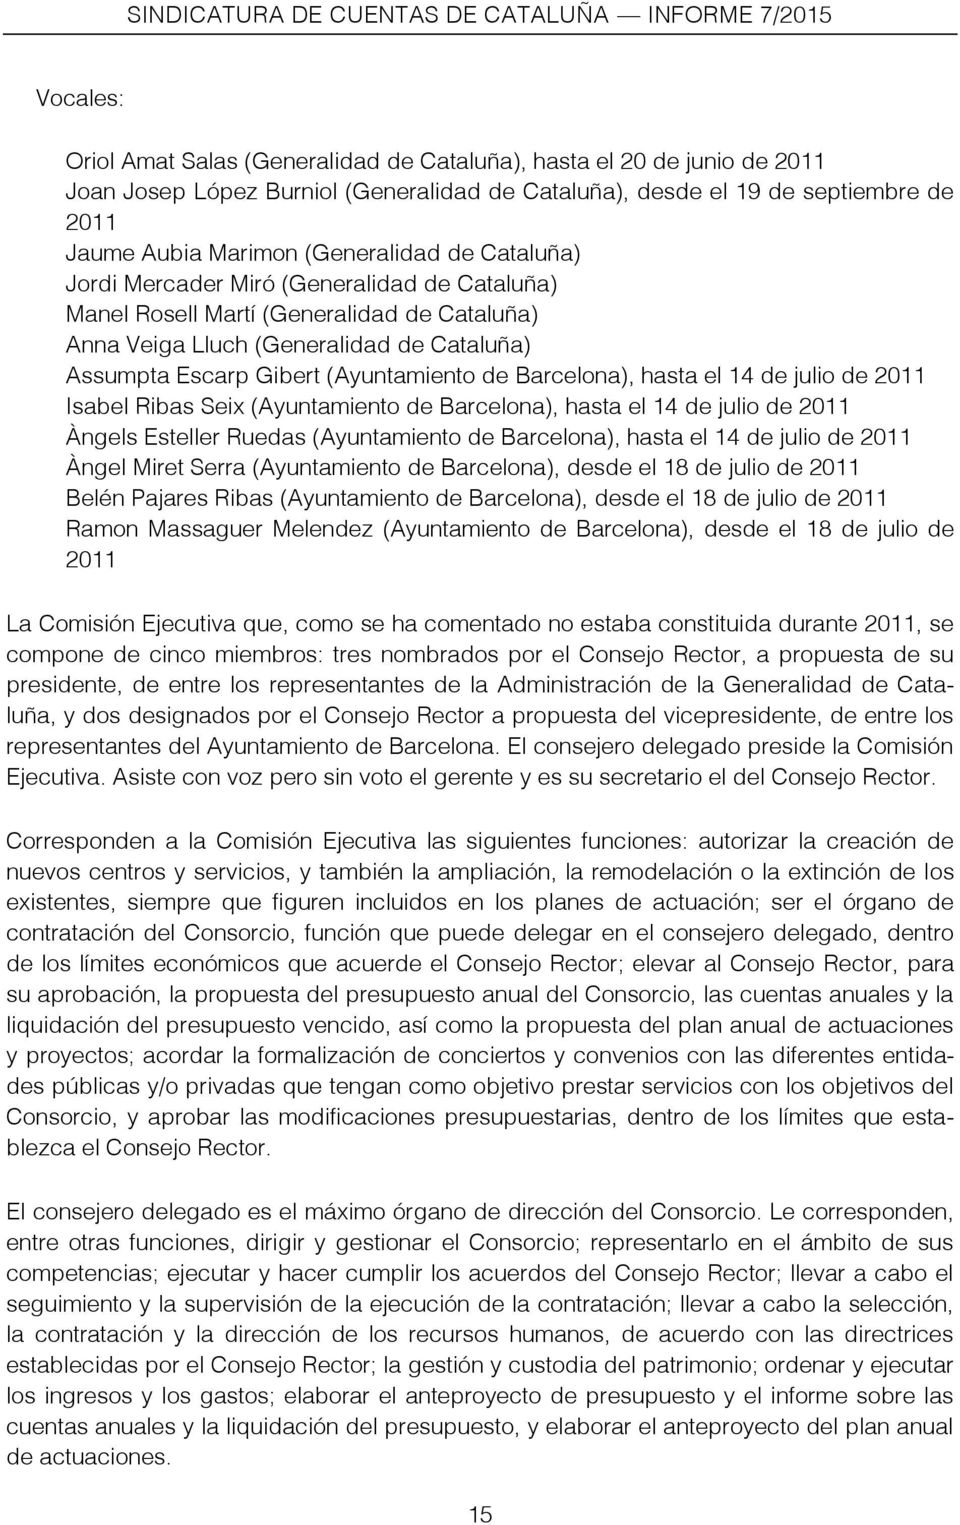 Barcelona), hasta el 14 de julio de 2011 Isabel Ribas Seix (Ayuntamiento de Barcelona), hasta el 14 de julio de 2011 Àngels Esteller Ruedas (Ayuntamiento de Barcelona), hasta el 14 de julio de 2011